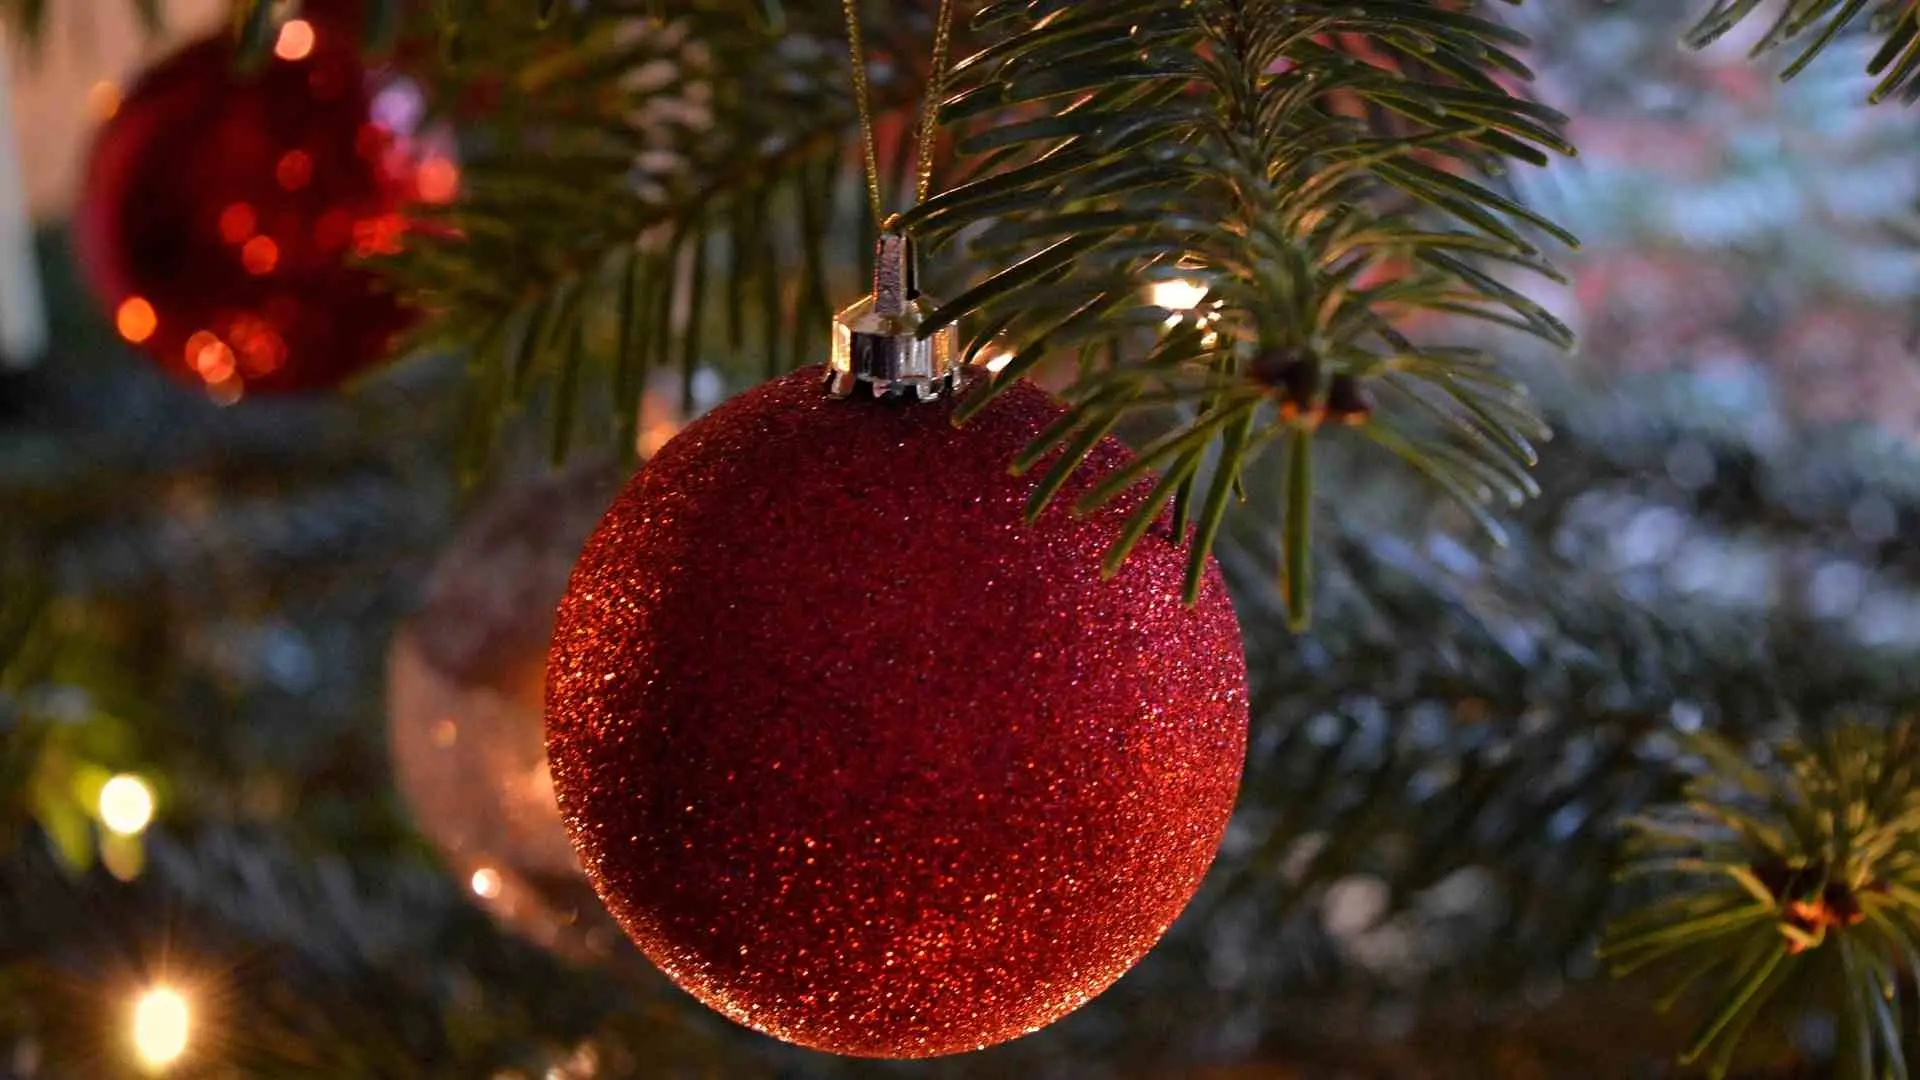 Esferas de Navidad: ¿Cuál es el significado de sus colores navideños? | N+